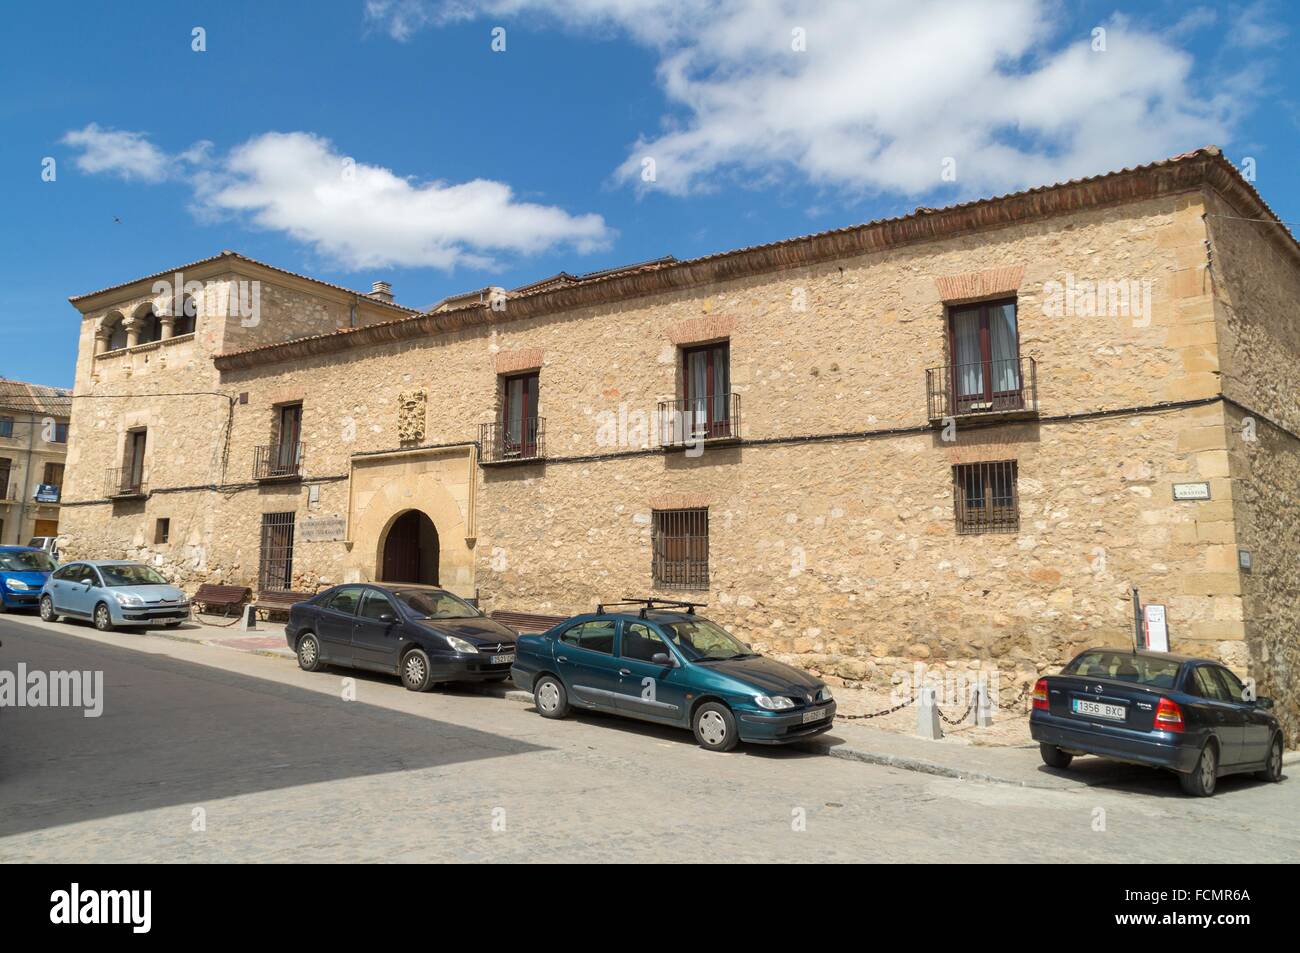 Palacio del sello en Carbonero el Mayor. Segovia. Castilla León. España. Stock Photo